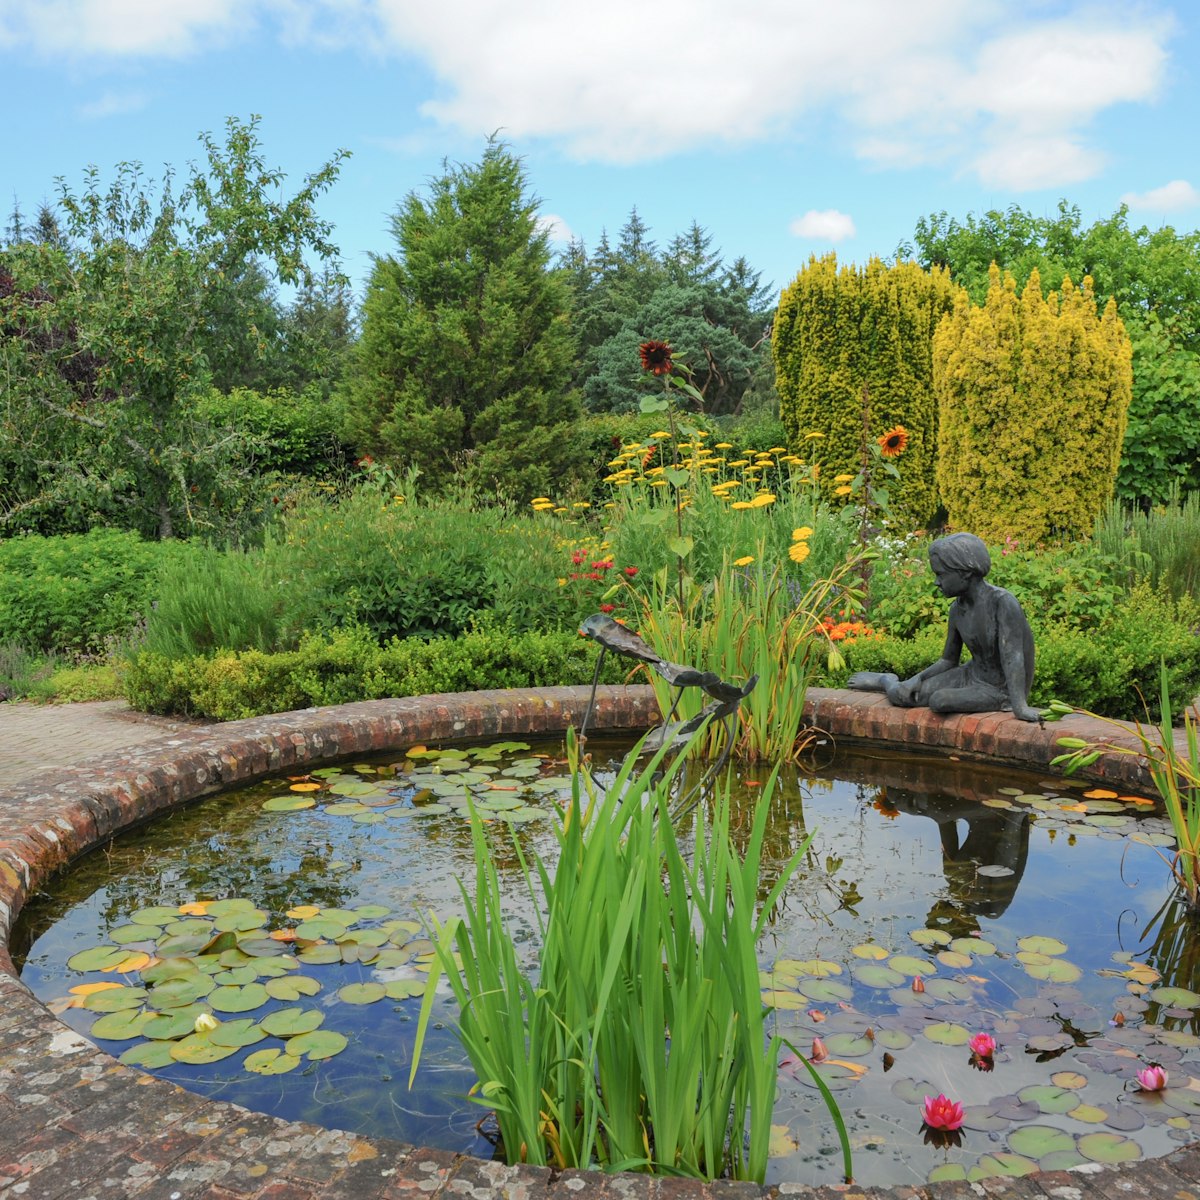 The Gardens at Rosemoor.